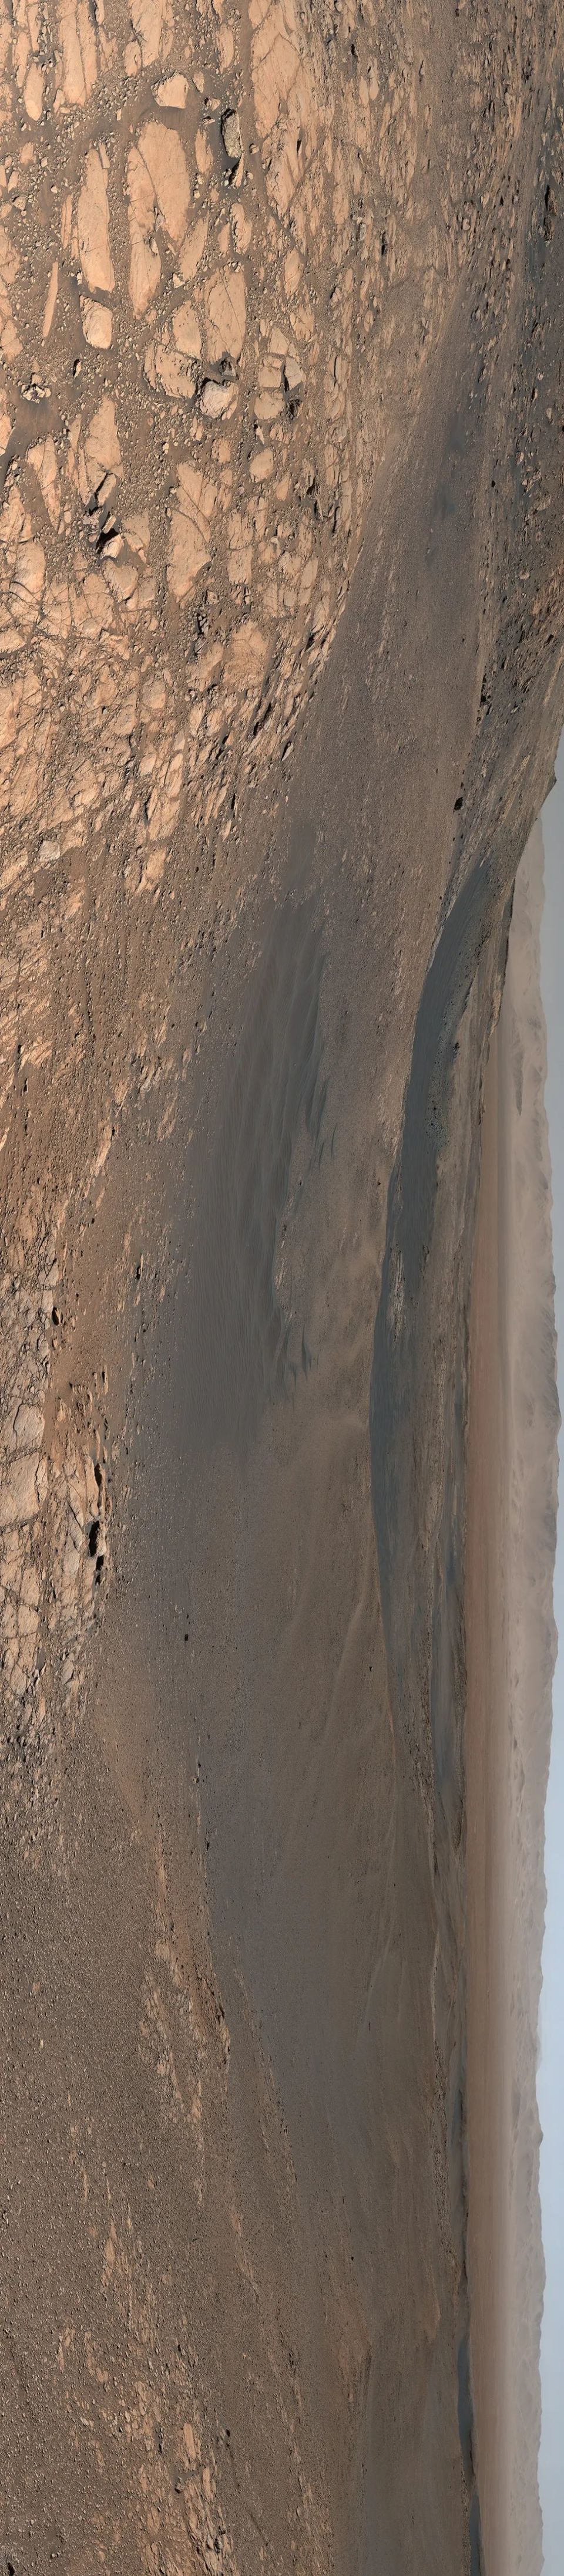 火星图像,惊人的分辨率所呈现出的奇特景观,勾勒着这个美丽古老星球